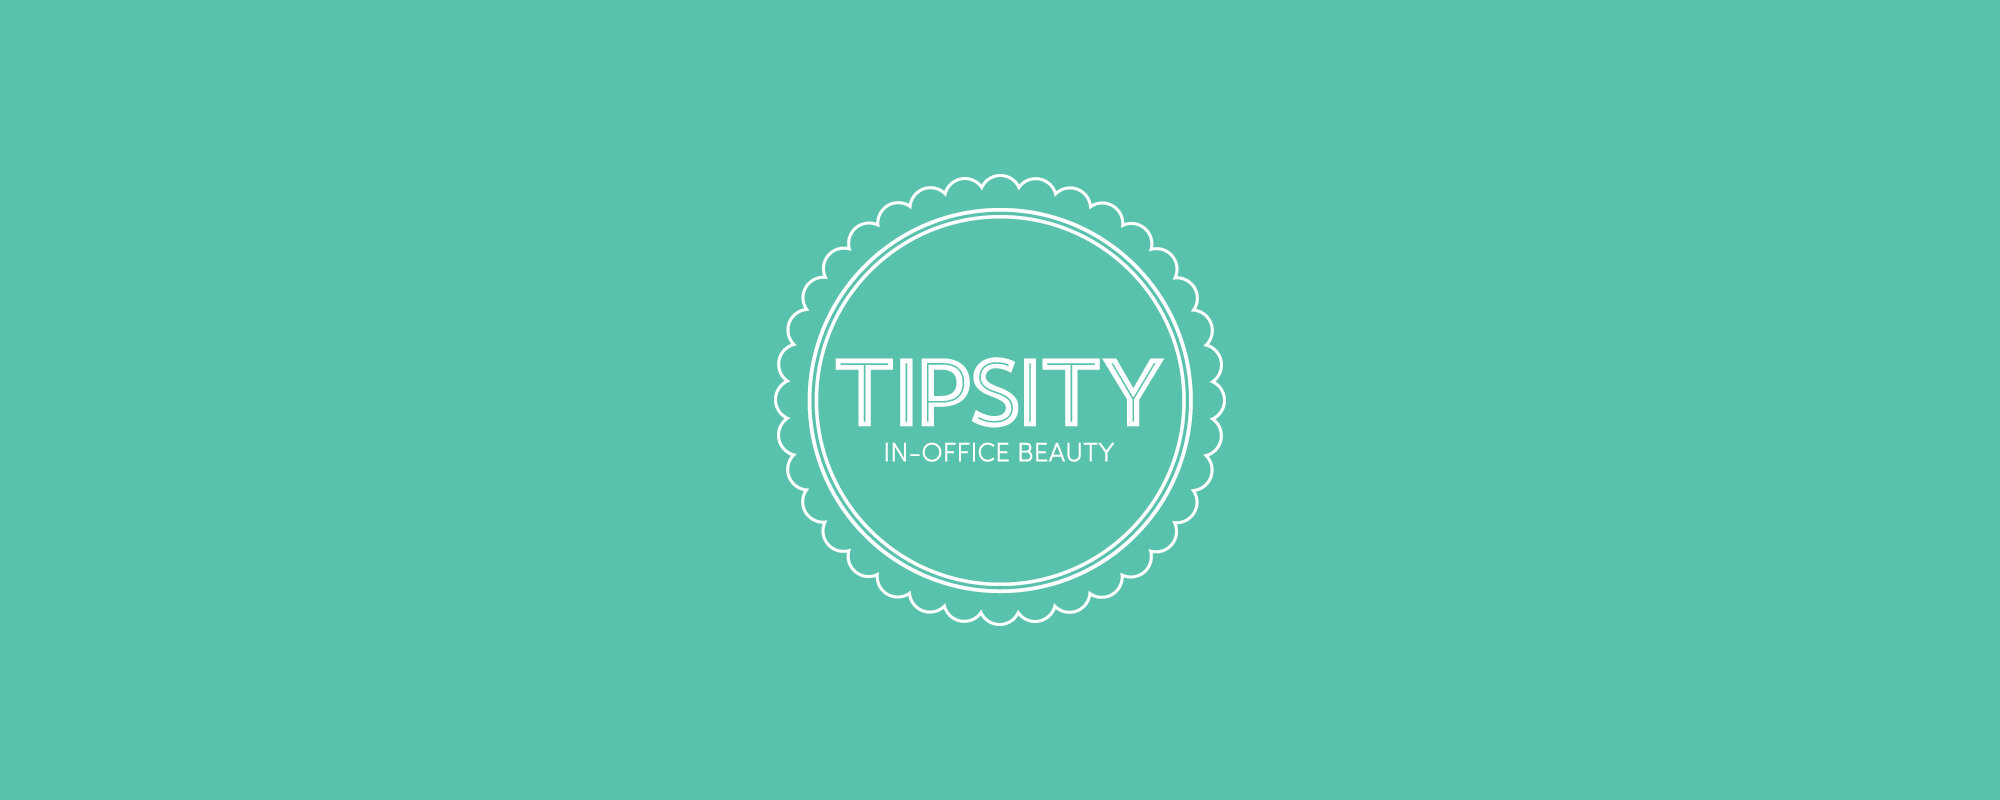 Tipsity Cover Image.jpg